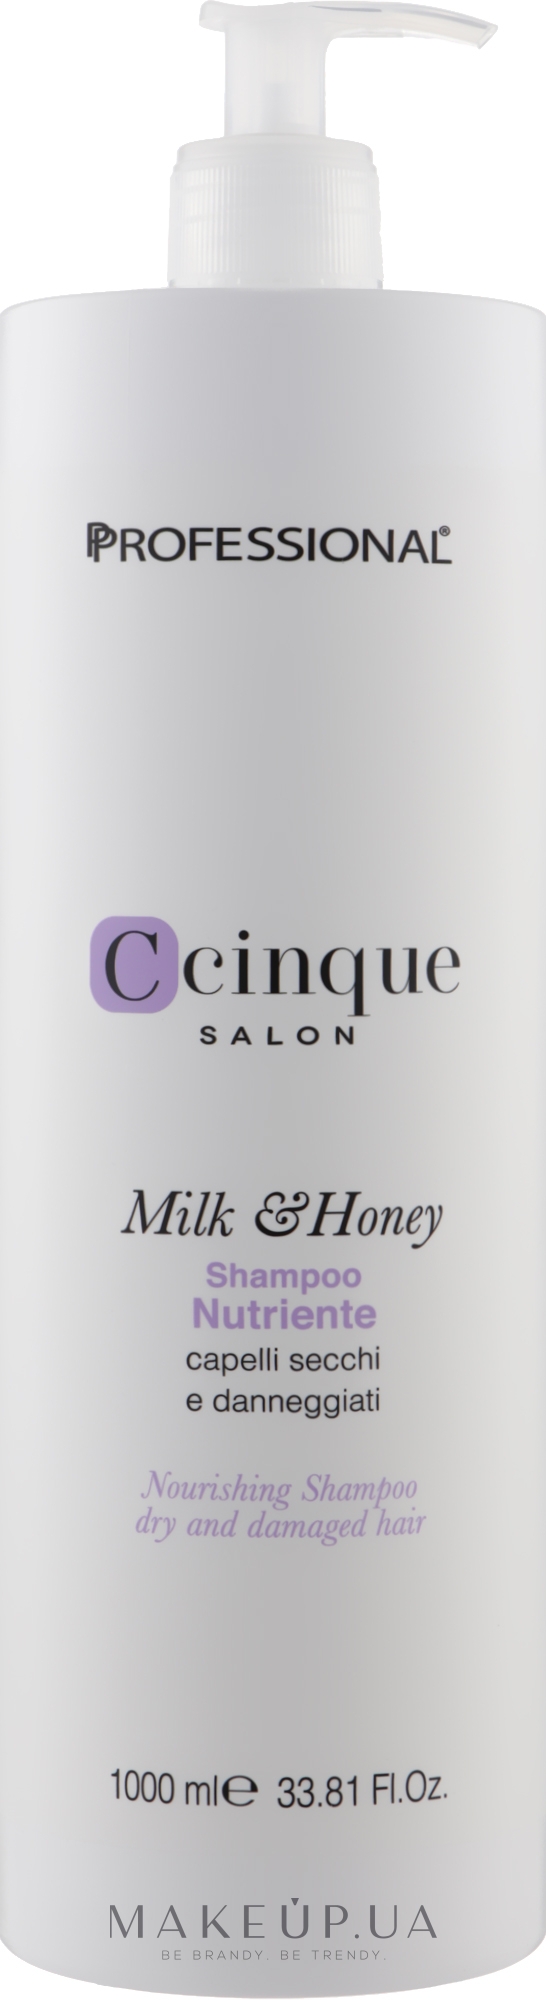 Шампунь питательный для волос - Professional C Cinque Milk & Honey Nourishing Shampoo — фото 1000ml